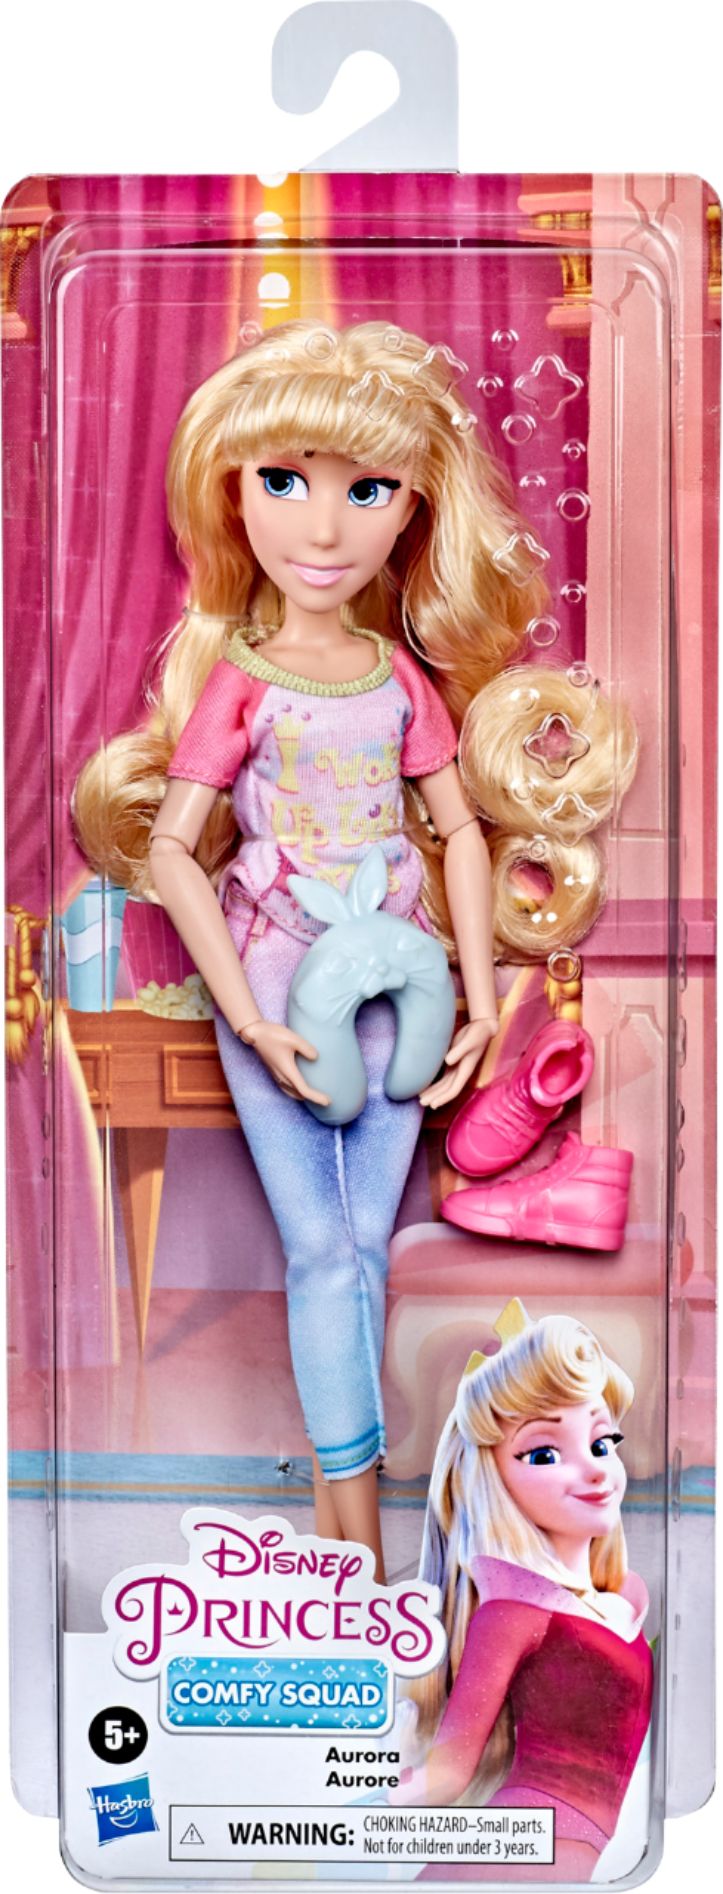 Disney Princess DPR Comfy Squad Princess Aurora Fashion Pack